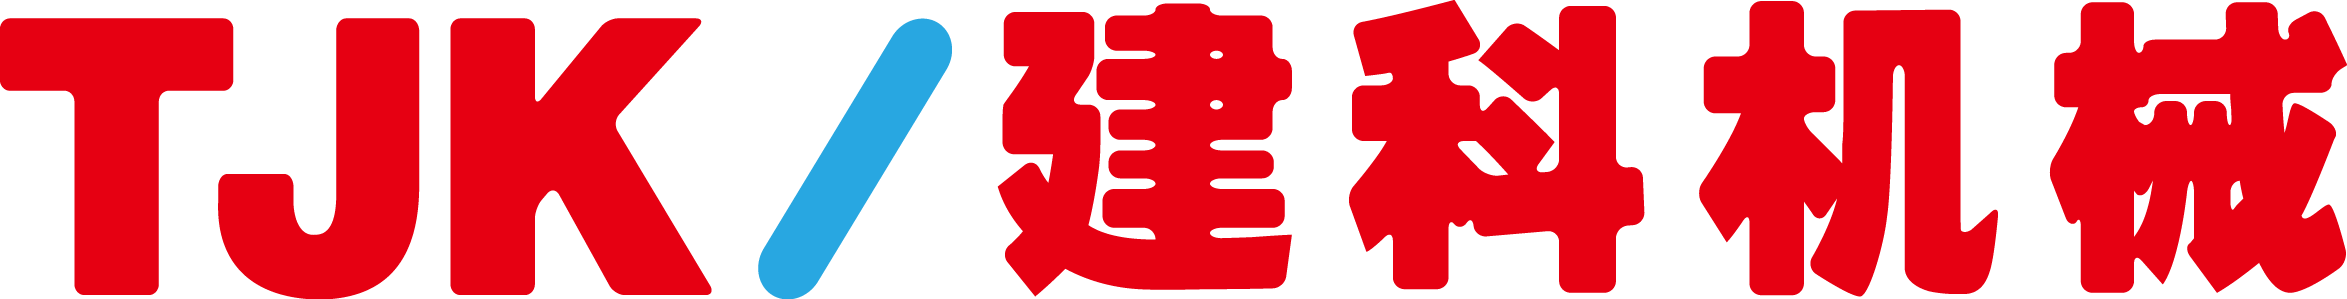 壹定发(中国区)照明工程有限公司_站点logo